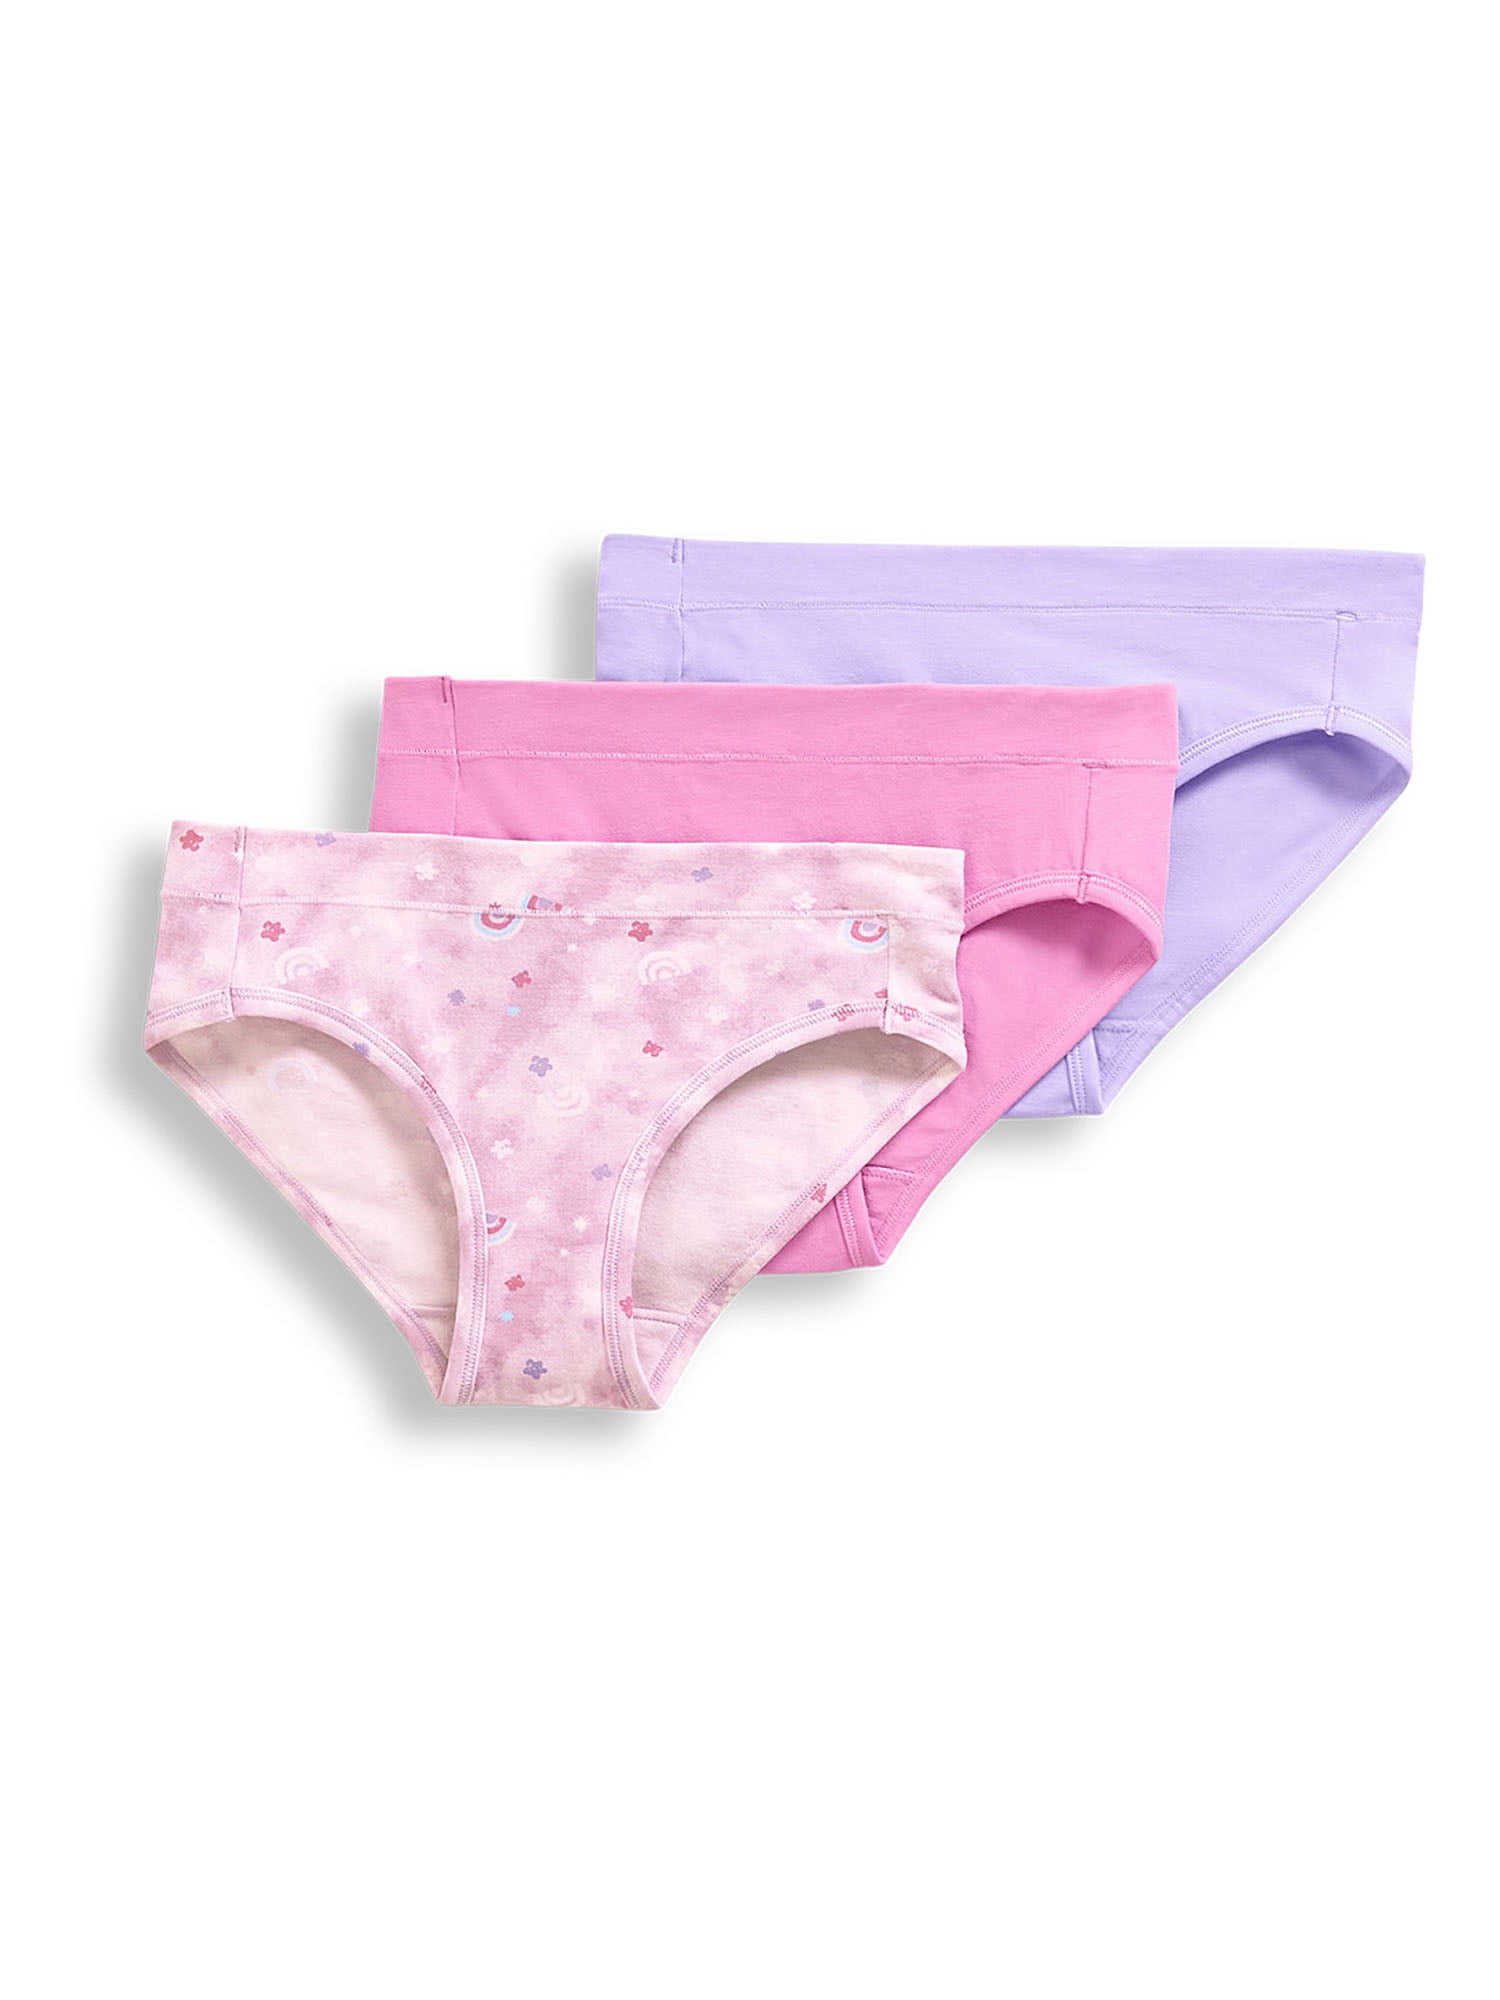 Girls Tradie 2 x 3 Pack Cotton Underwear Bikini Briefs Forest (SB3)